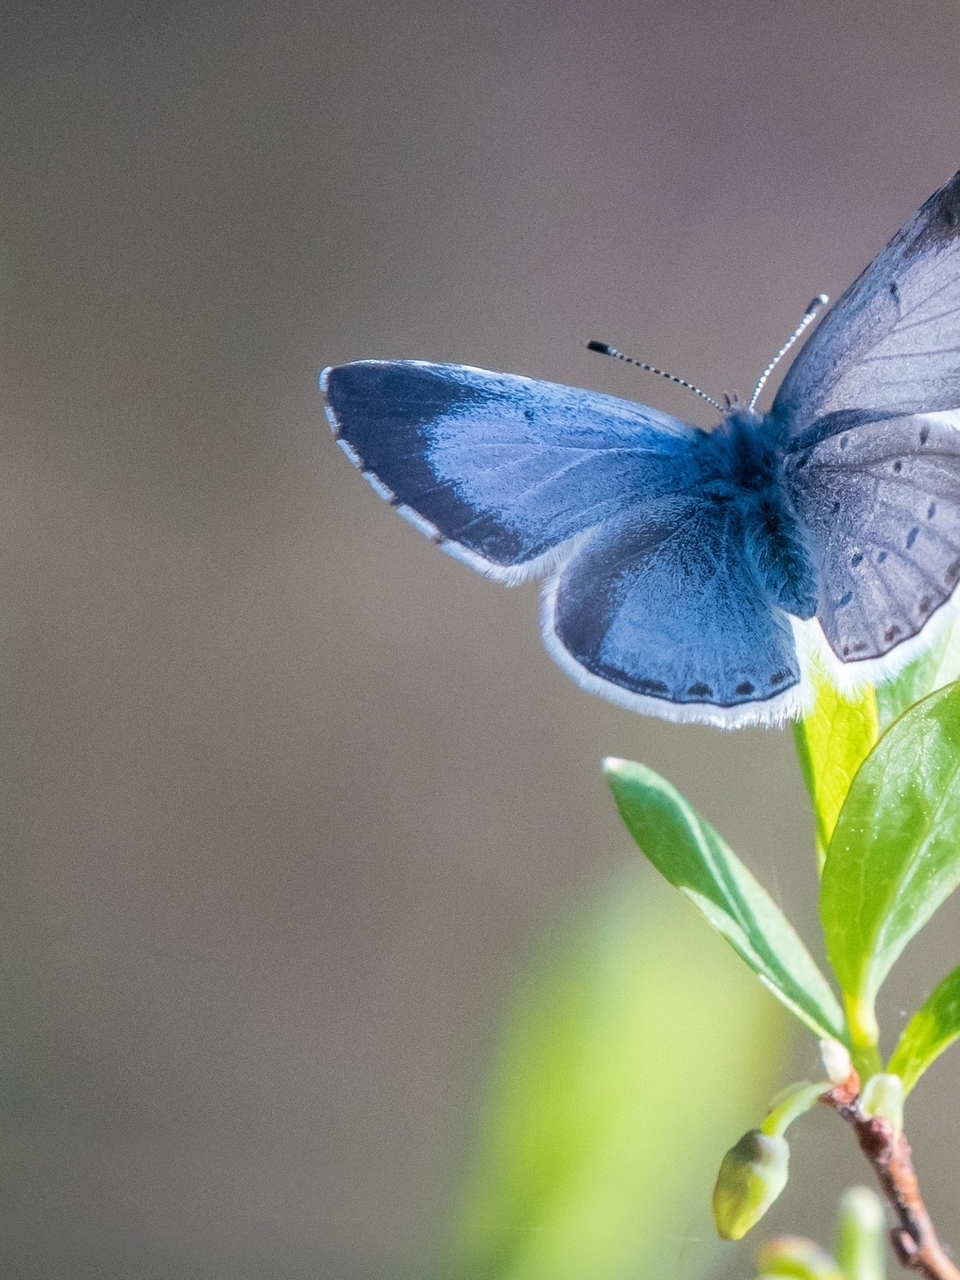 Картинка: Бабочка, крылья, голубая, растение, листья